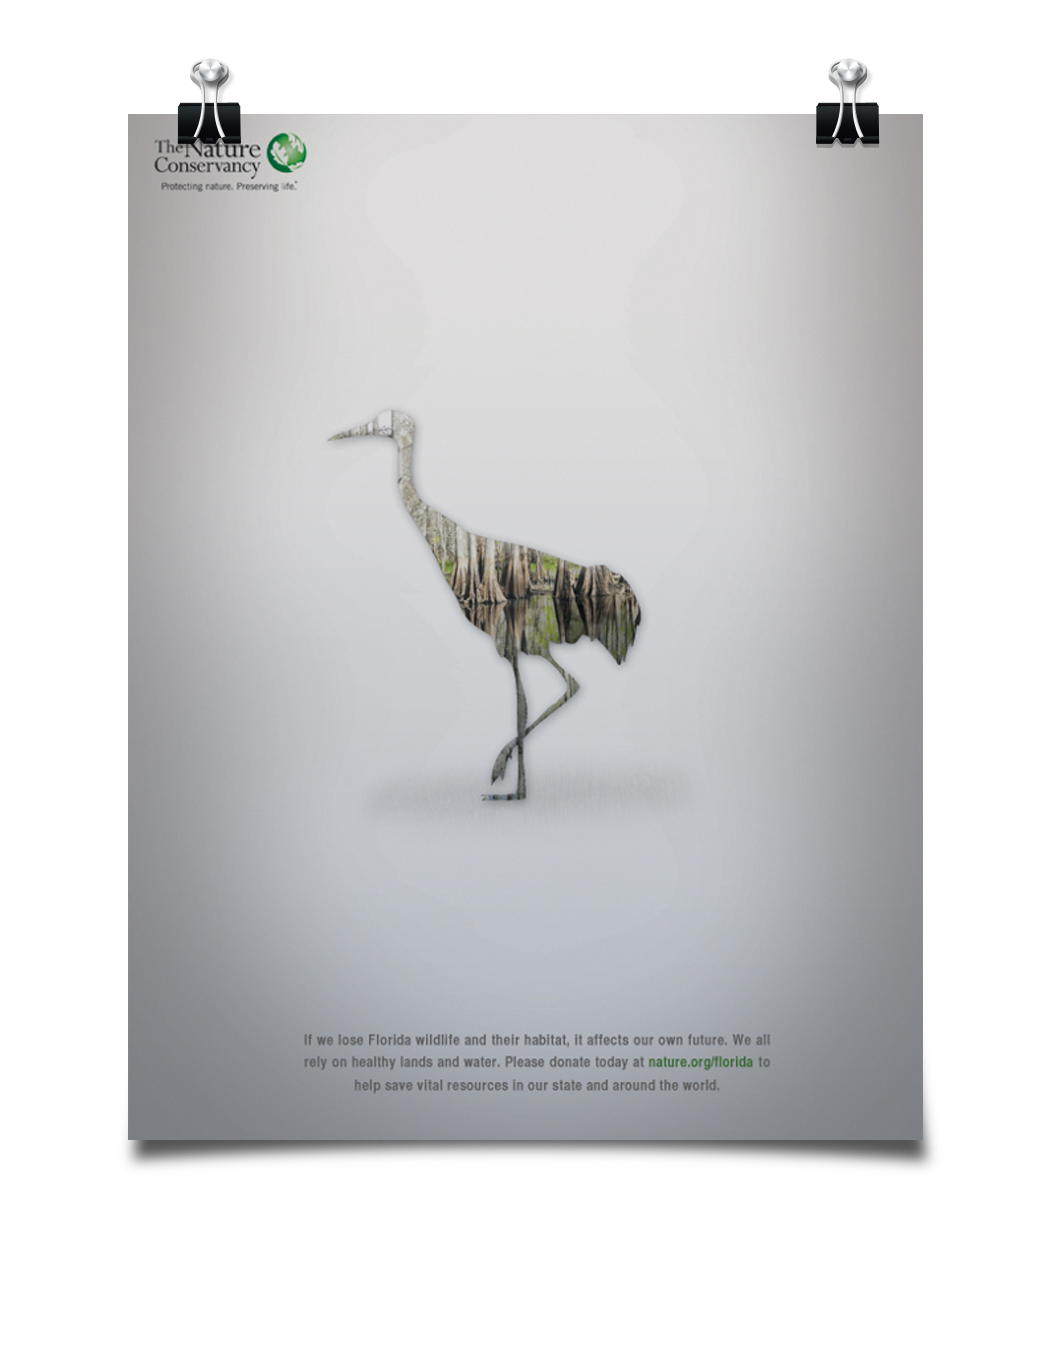 WWF Tanner scipio animal Extinction ad nature conservancy